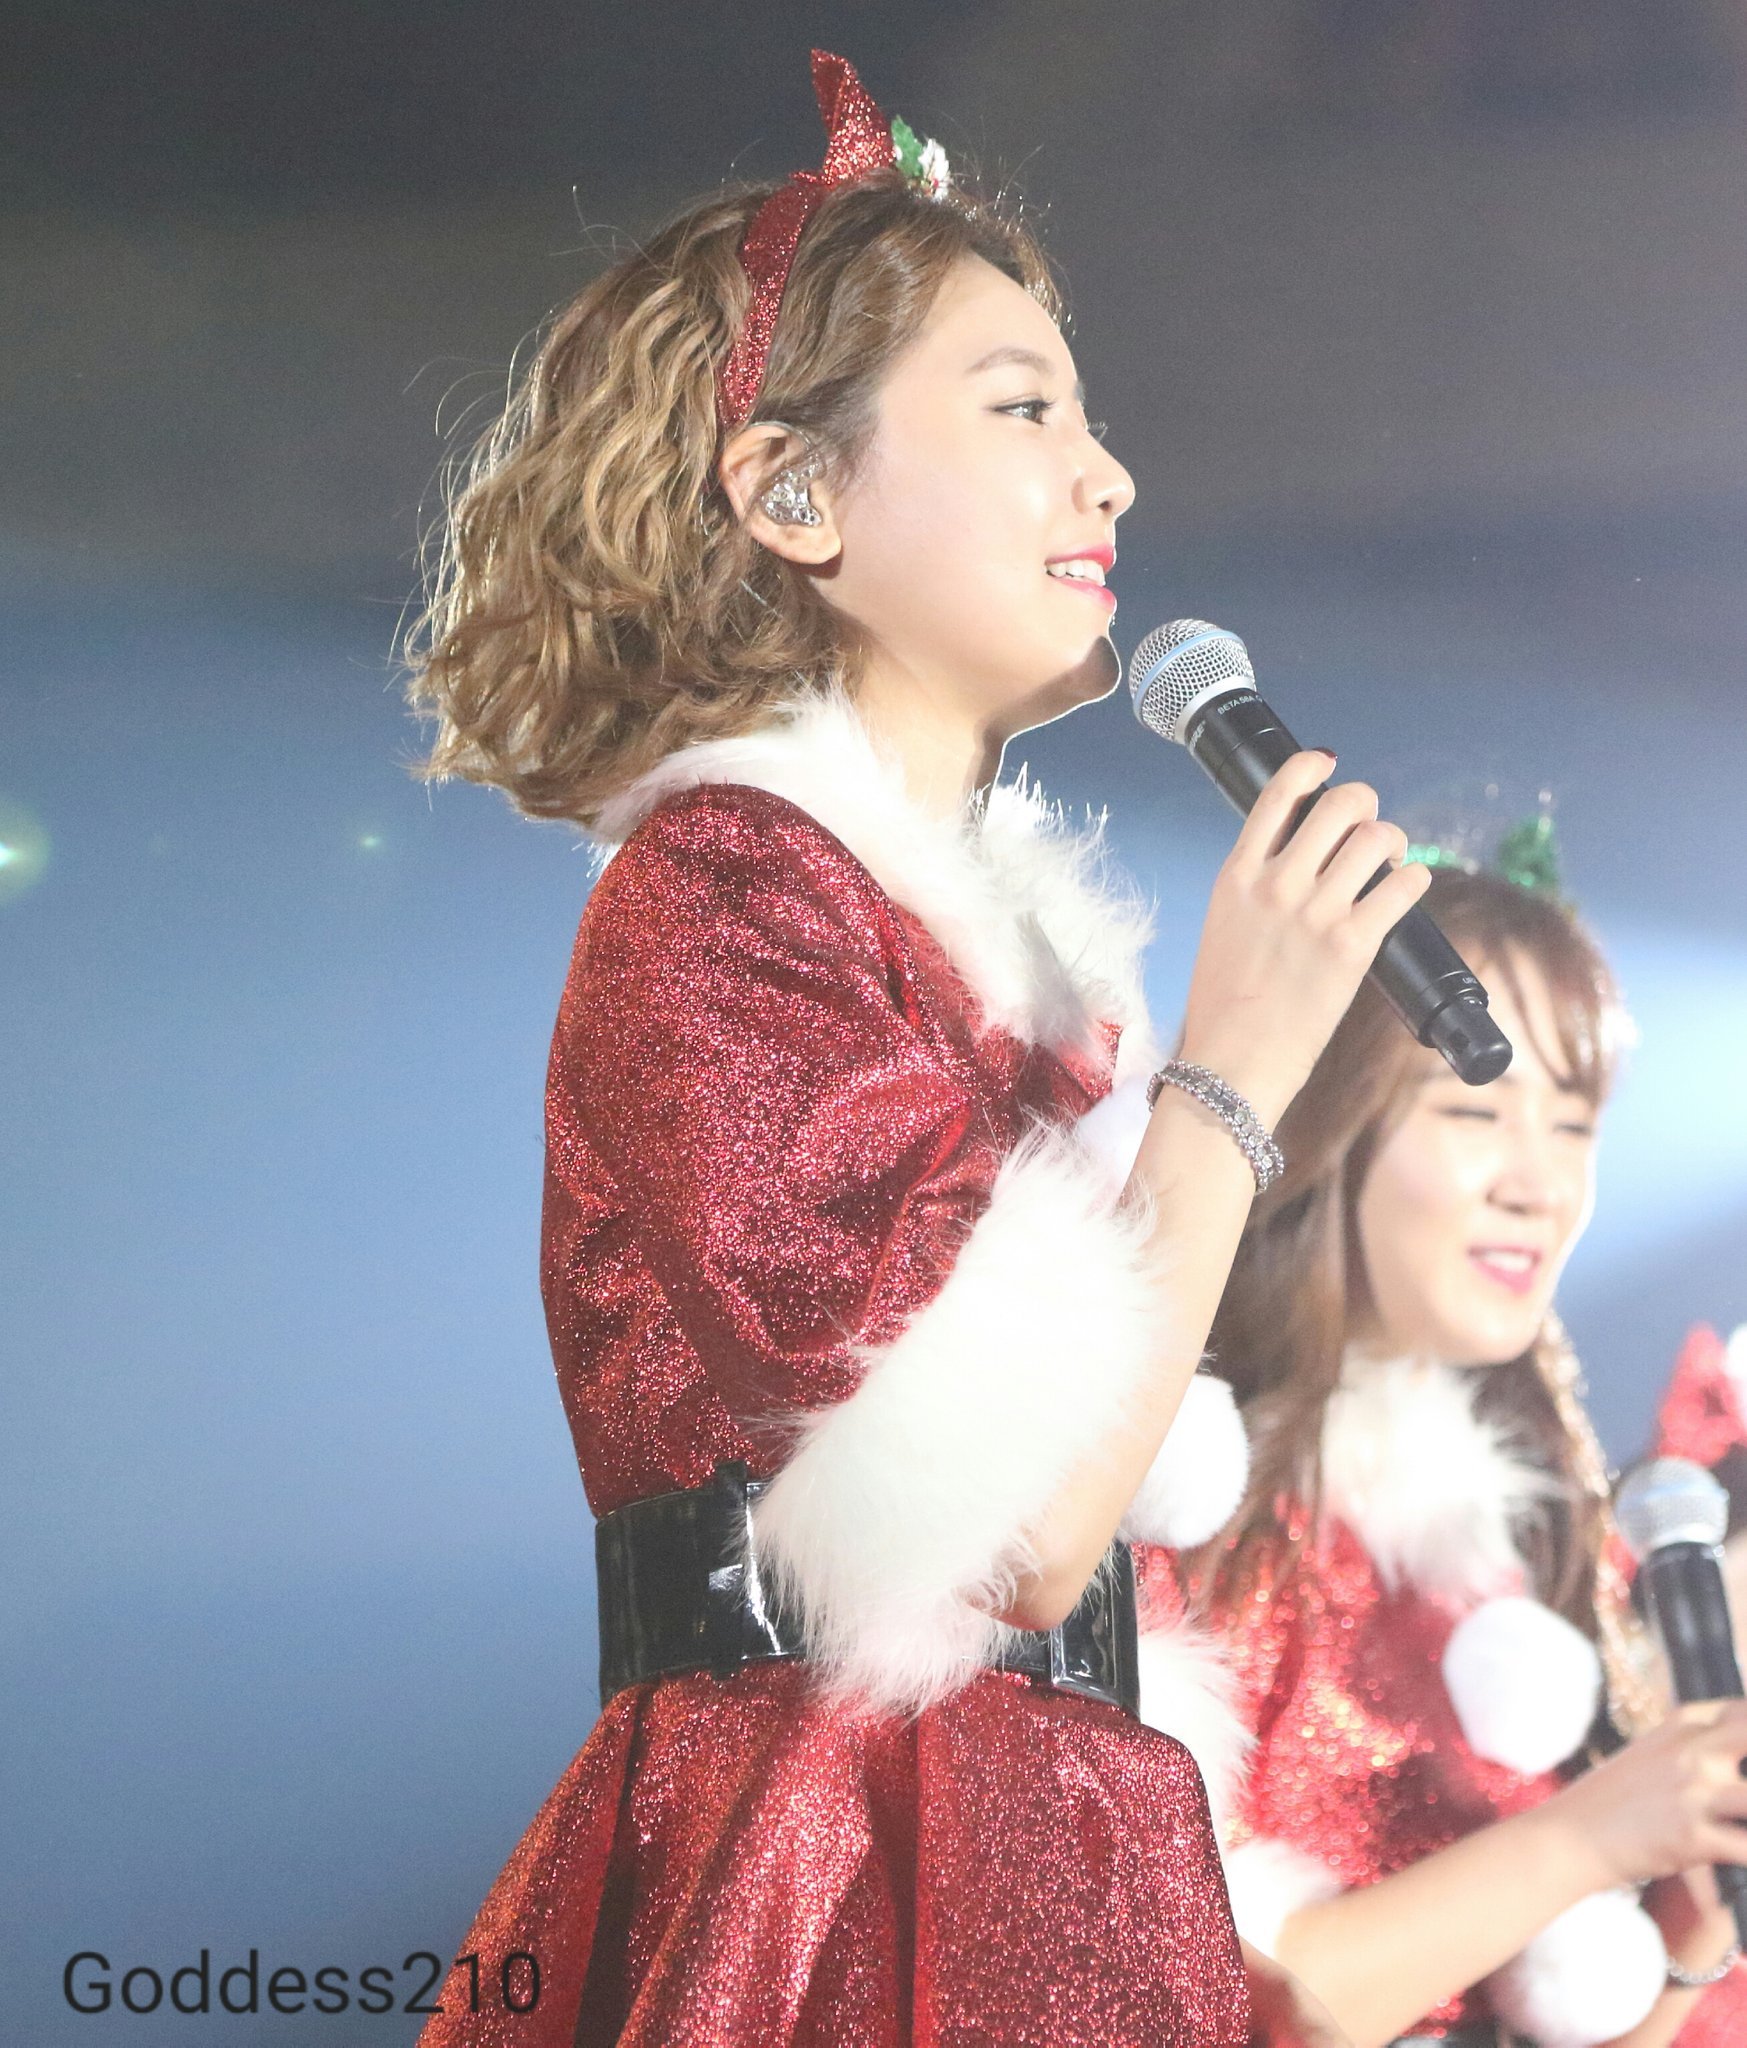 [PIC][12-12-2015]Hình ảnh mới nhất từ "GIRLS' GENERATION 4th Tour PHANTASIA in Japan" của SNSD - Page 3 XX1T5NuqdS-3000x3000